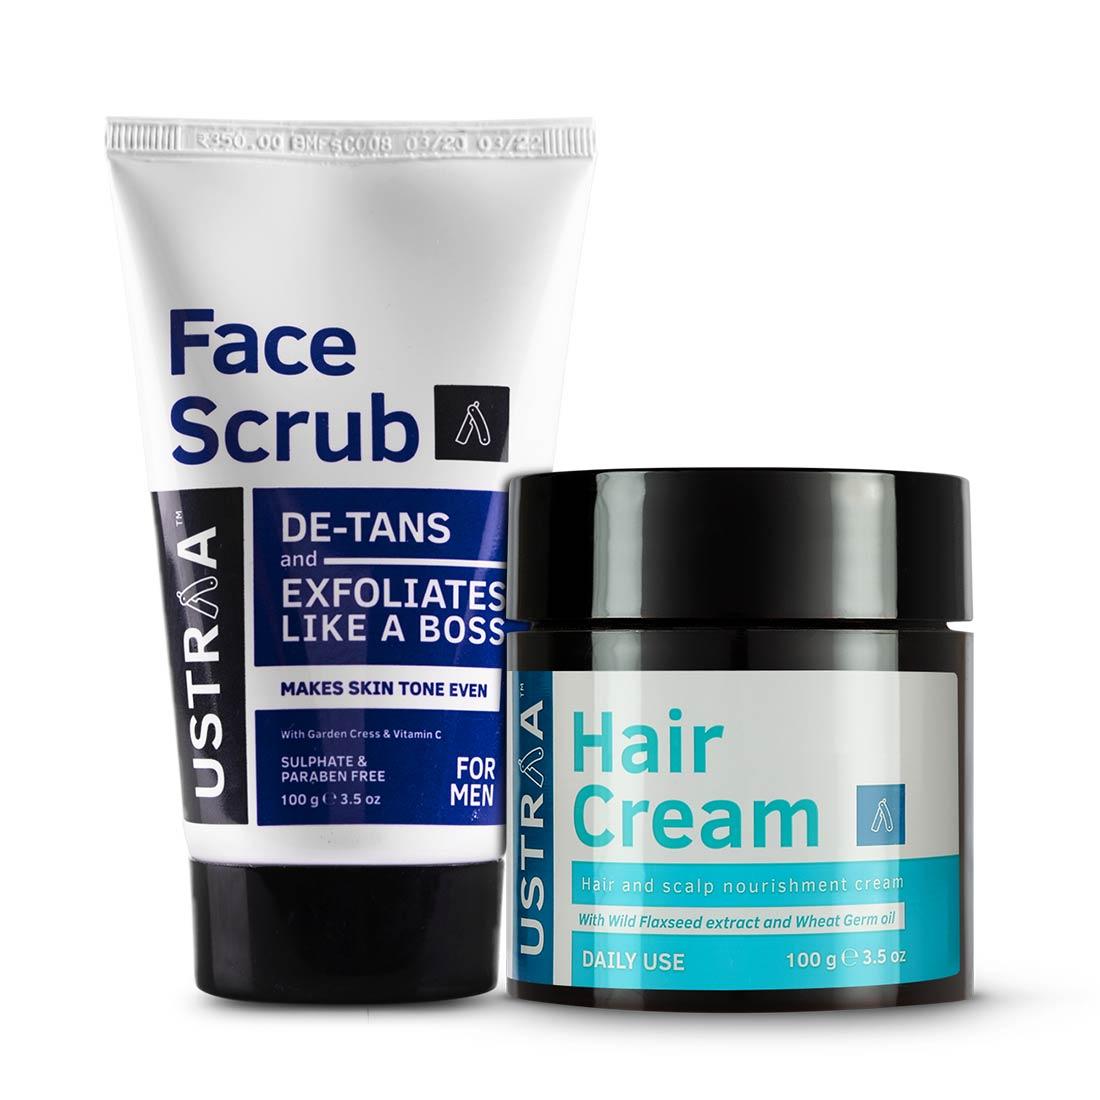 Hair Cream - Daily Use & Face Scrub for de-Tan